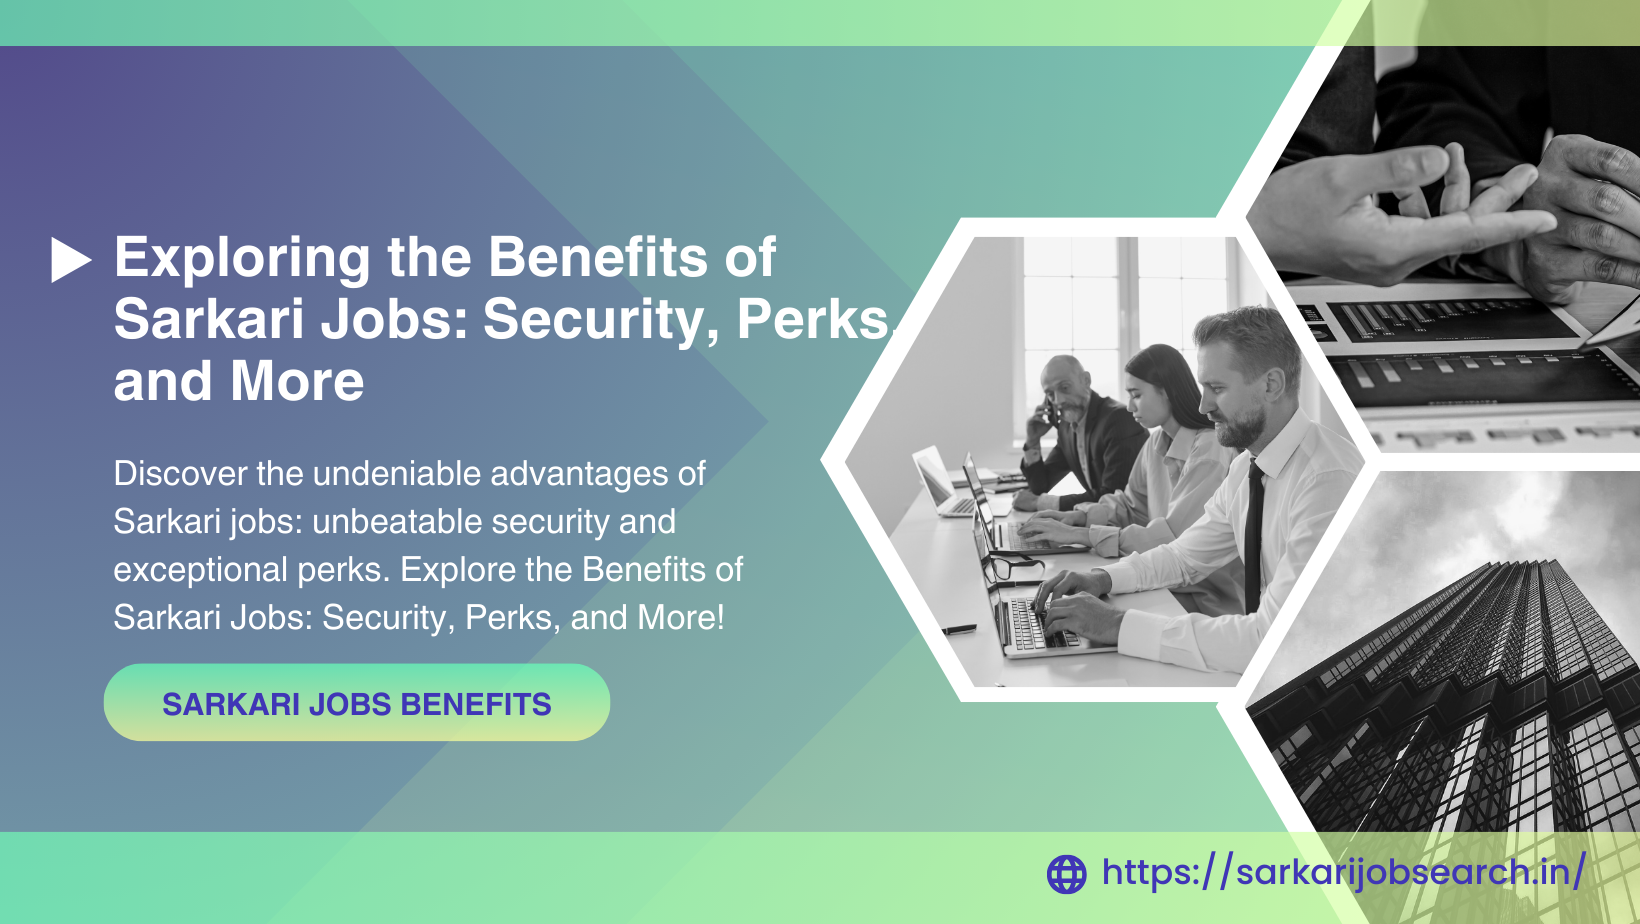 Image depicting Sarkari job benefits and security